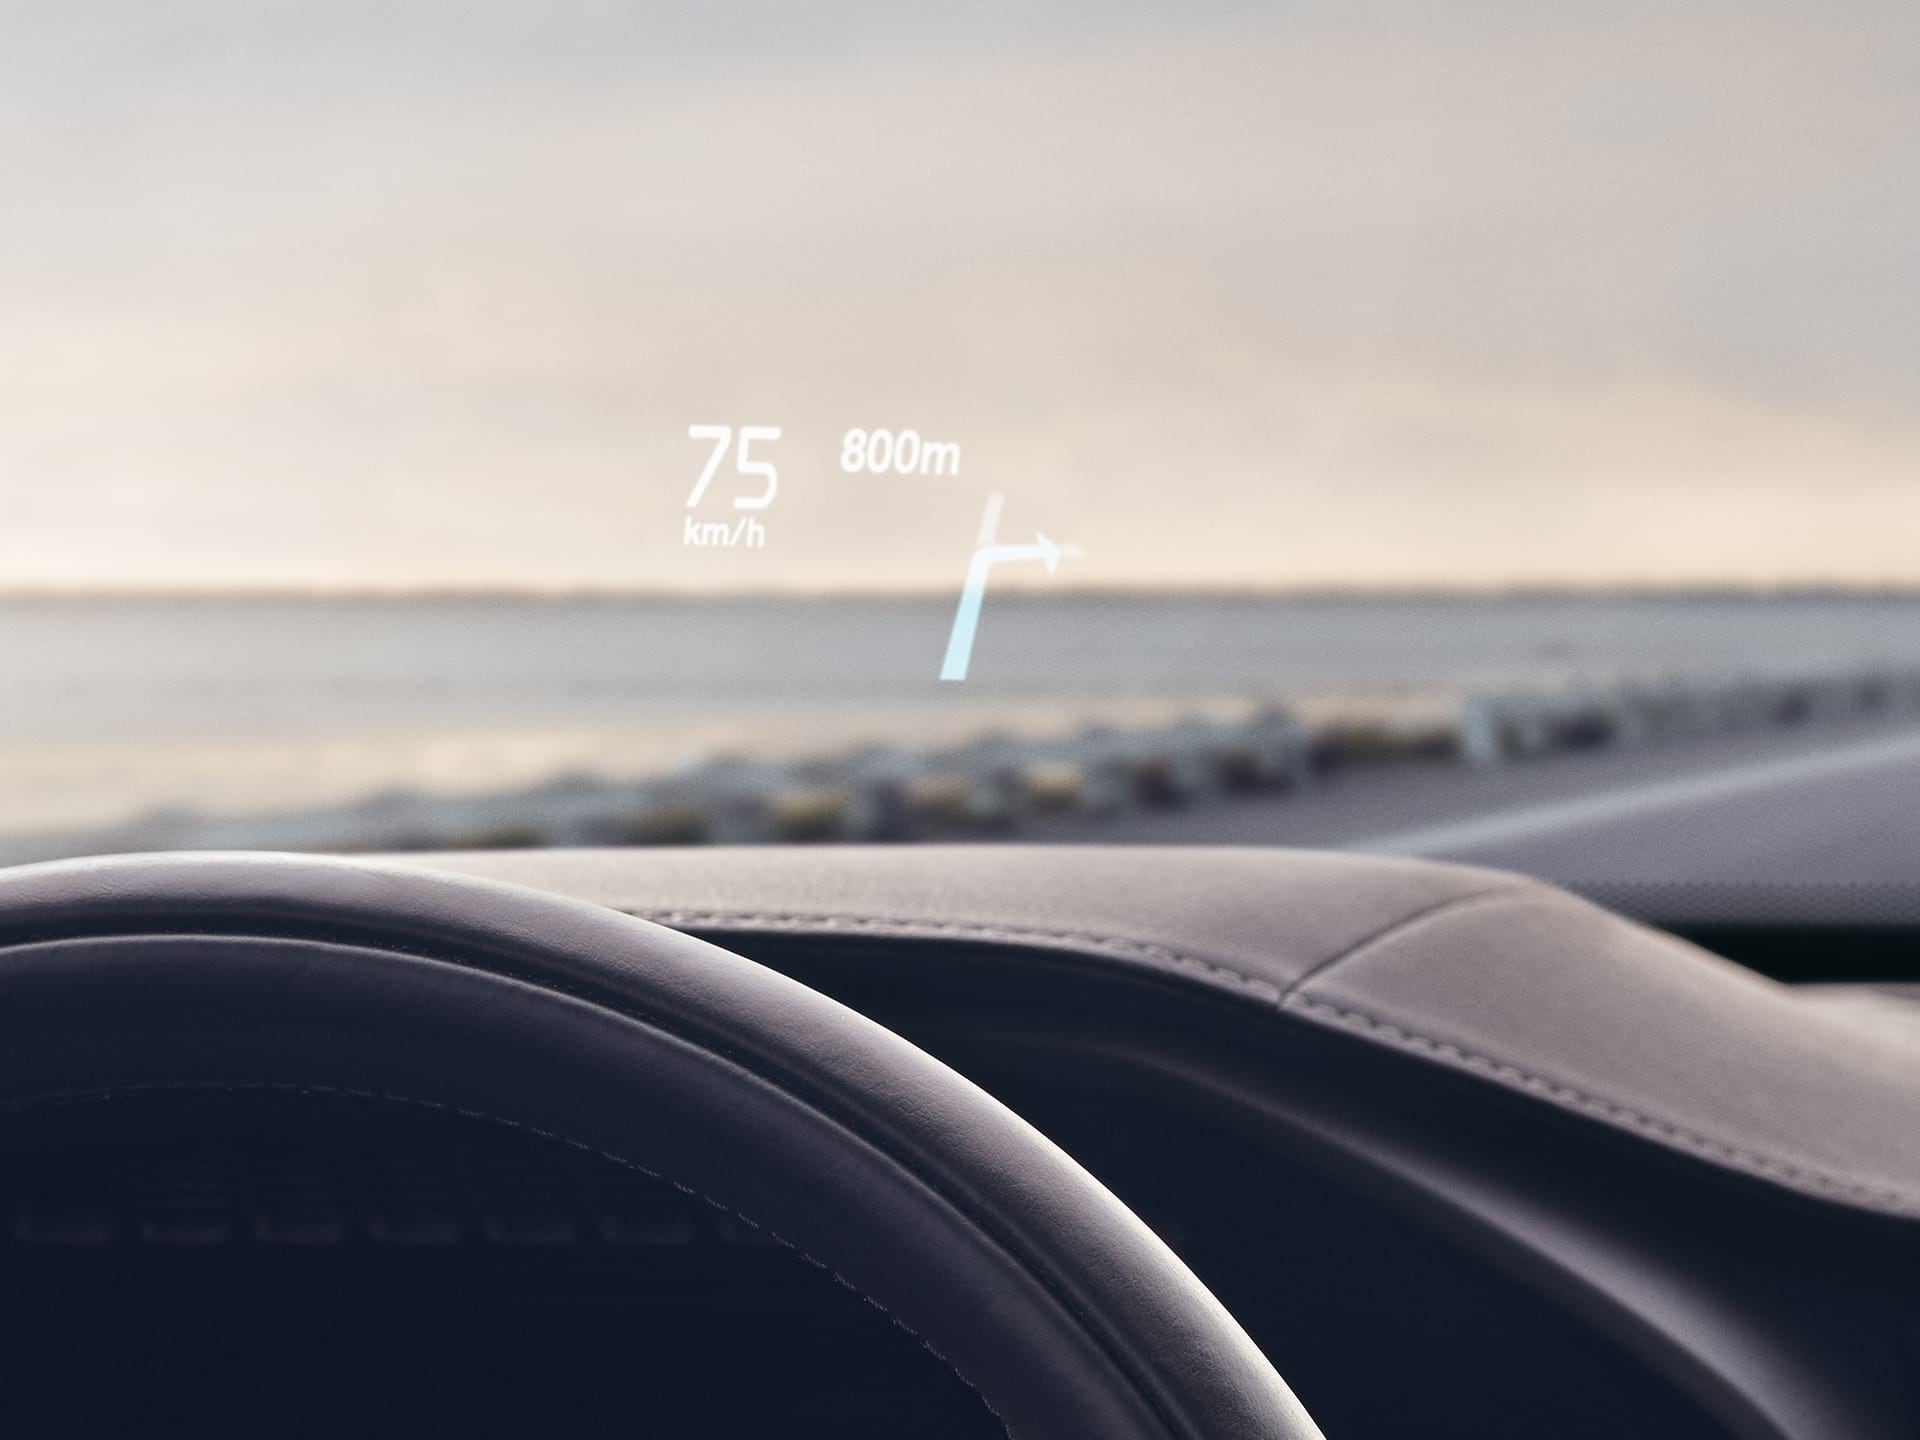 Вид из салона Volvo, скорость движения и навигация отображаются на проекционном дисплее лобового стекла.